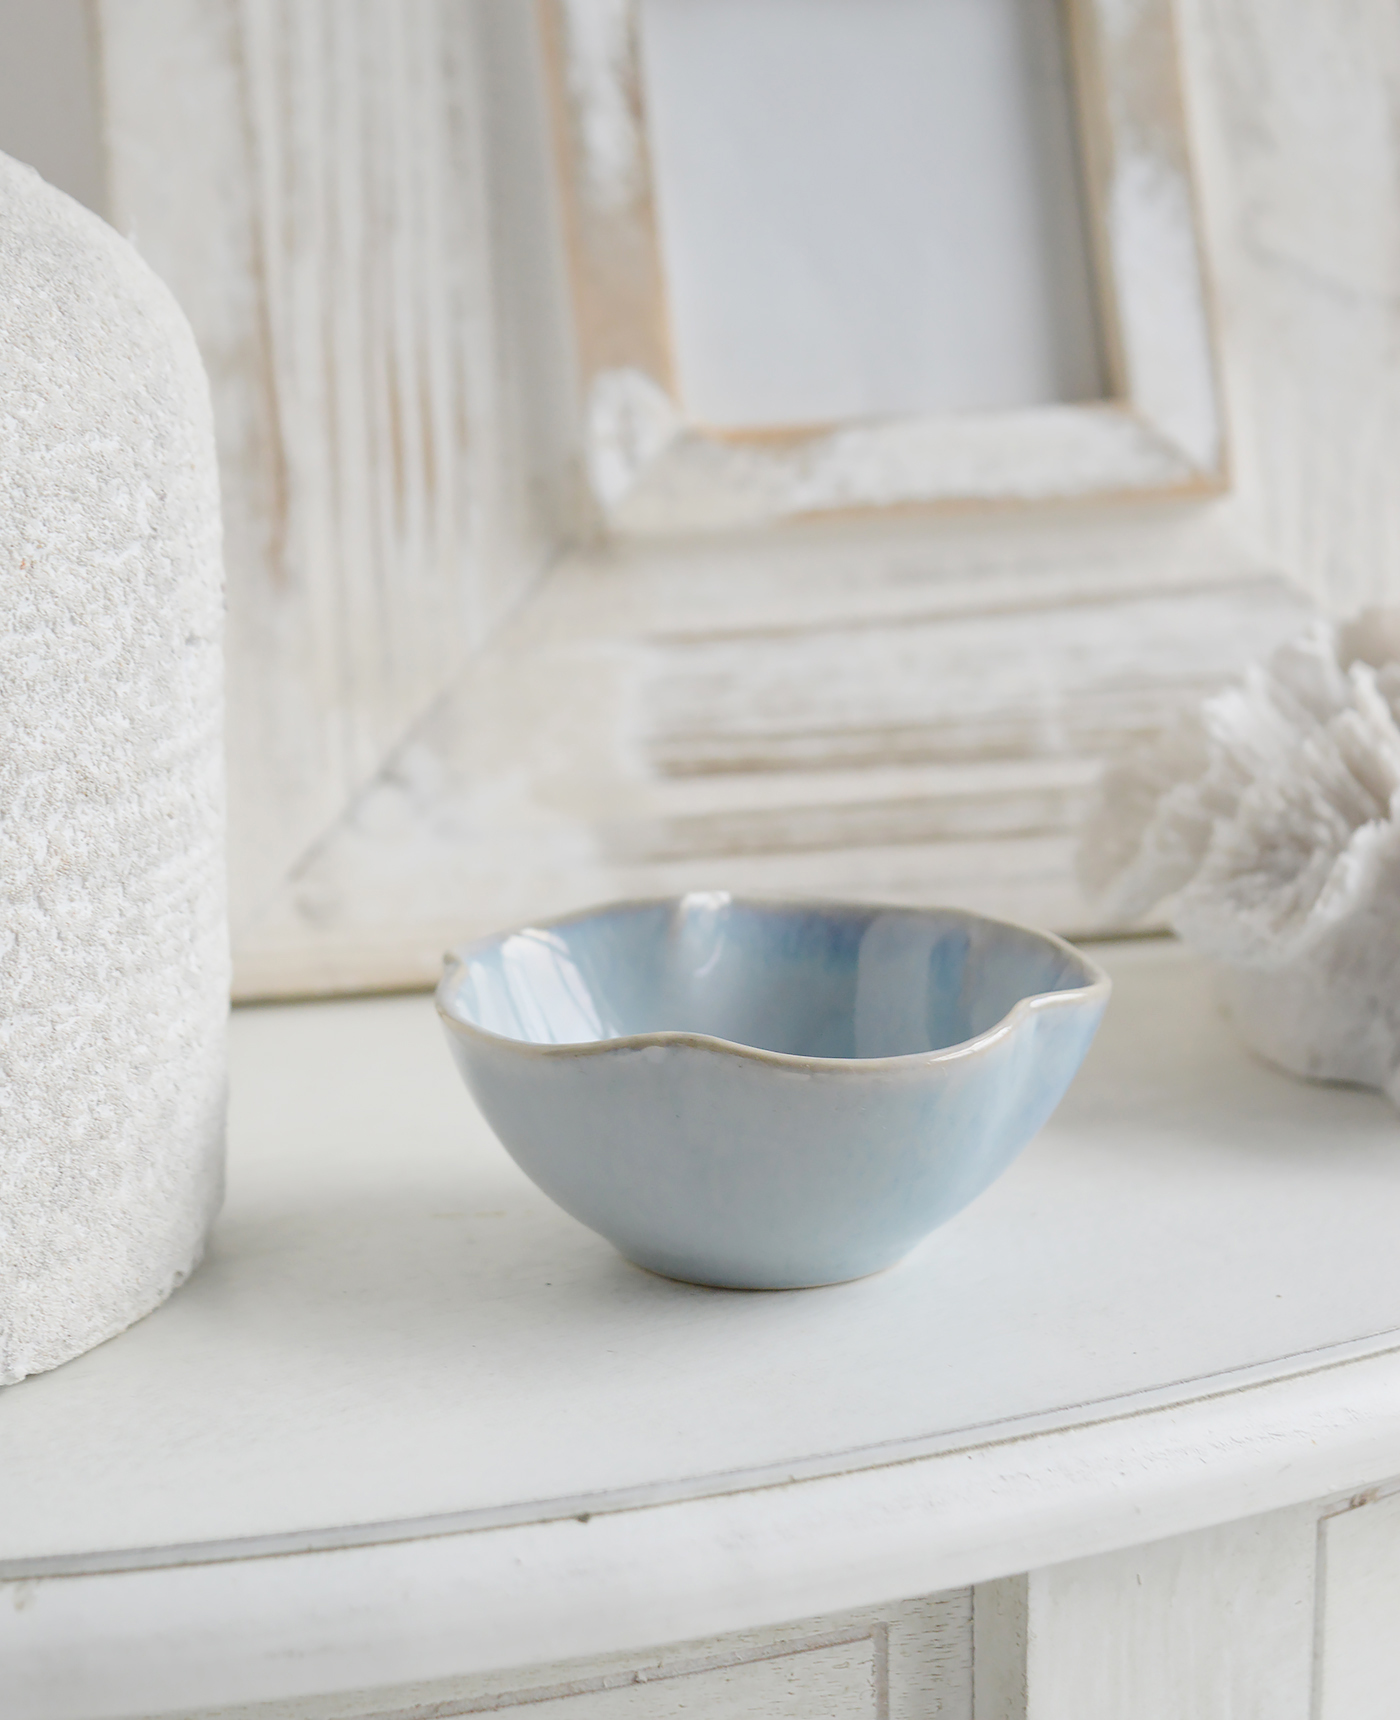 Pilgrim Ceramic Bowls - Blue Grey Textured for New England, Modern Farmhouse, Country and Coastal home interior decor